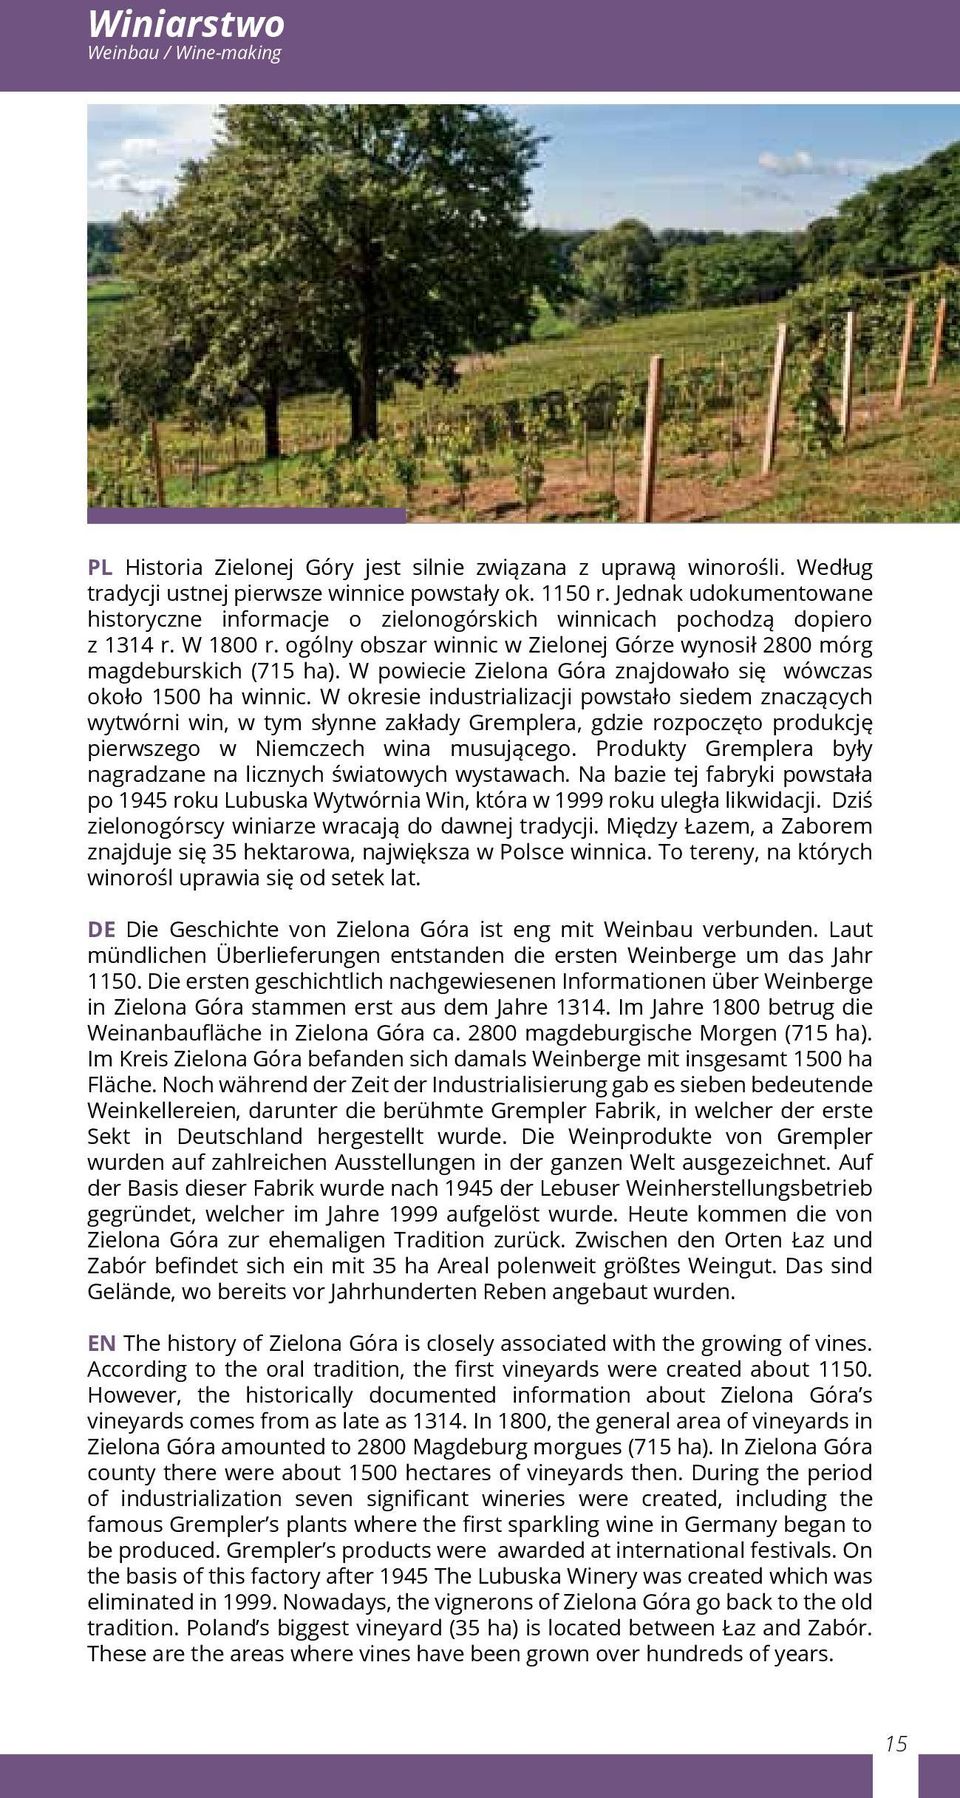 W powiecie Zielona Góra znajdowało się wówczas około 1500 ha winnic.